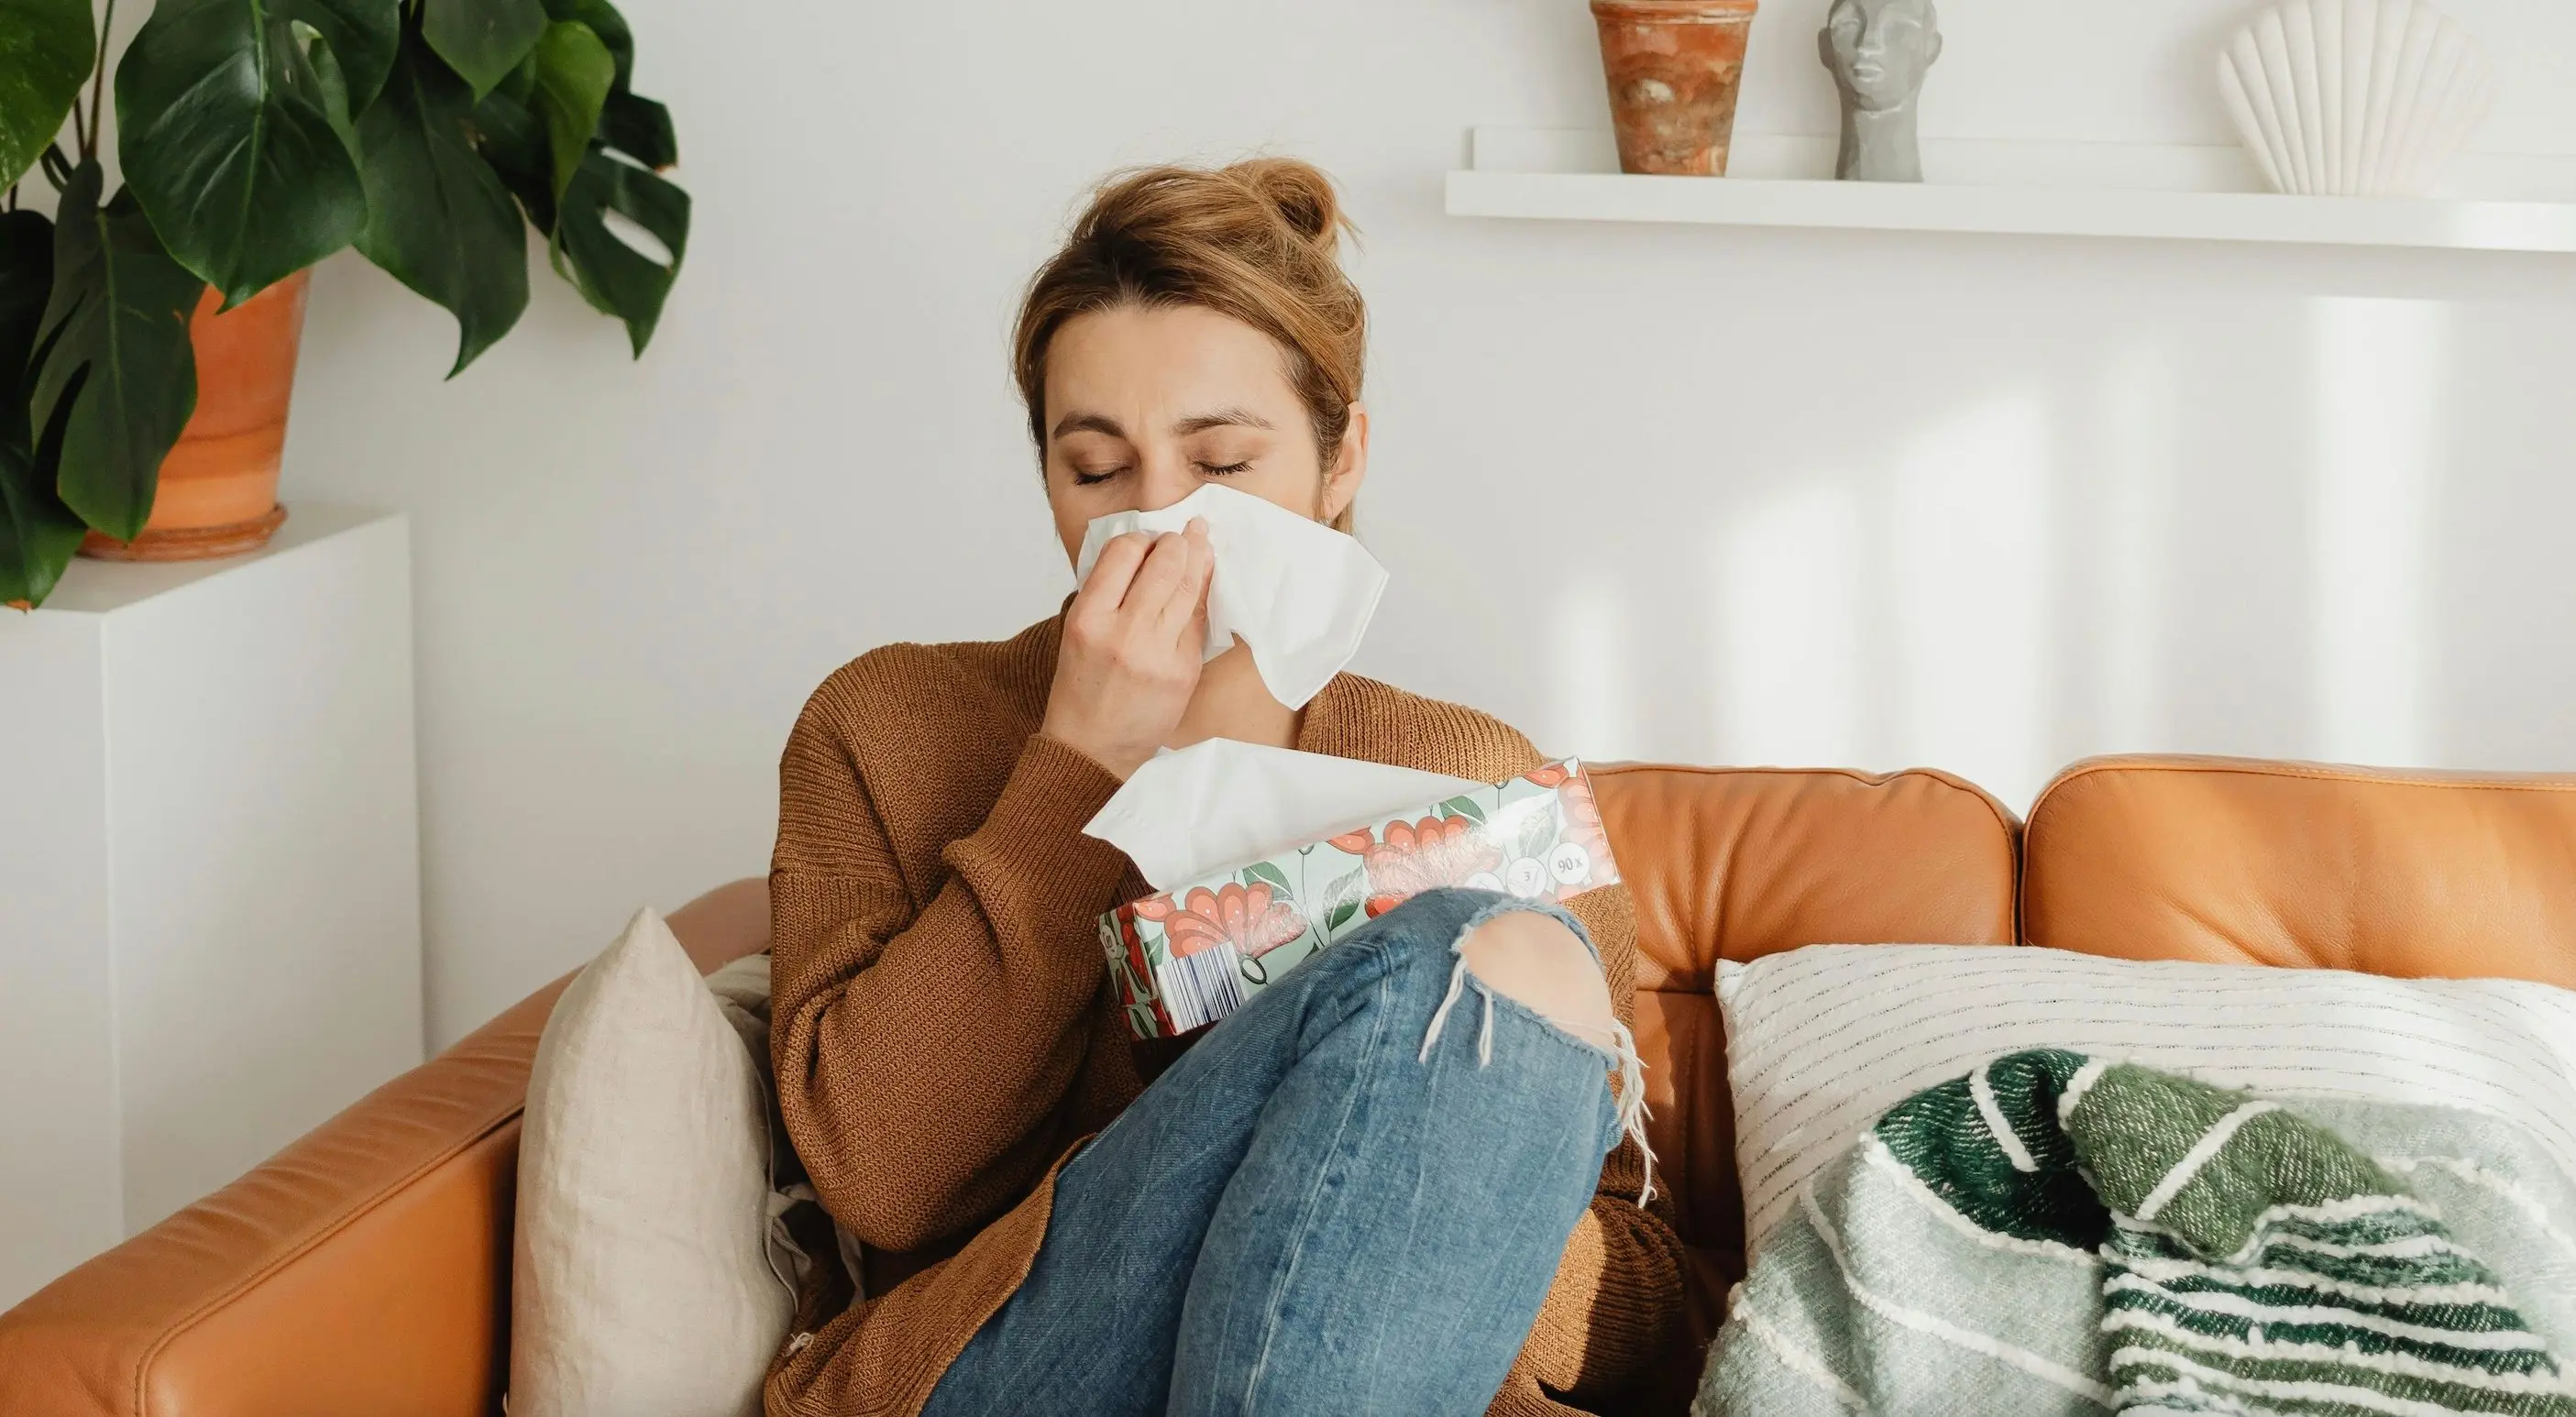 Чому деякі алергії мають сезонний характер та що їх викликає?

Чому деякі алергії виникають лише у певні періоди року та які алергени їх спричиняють?